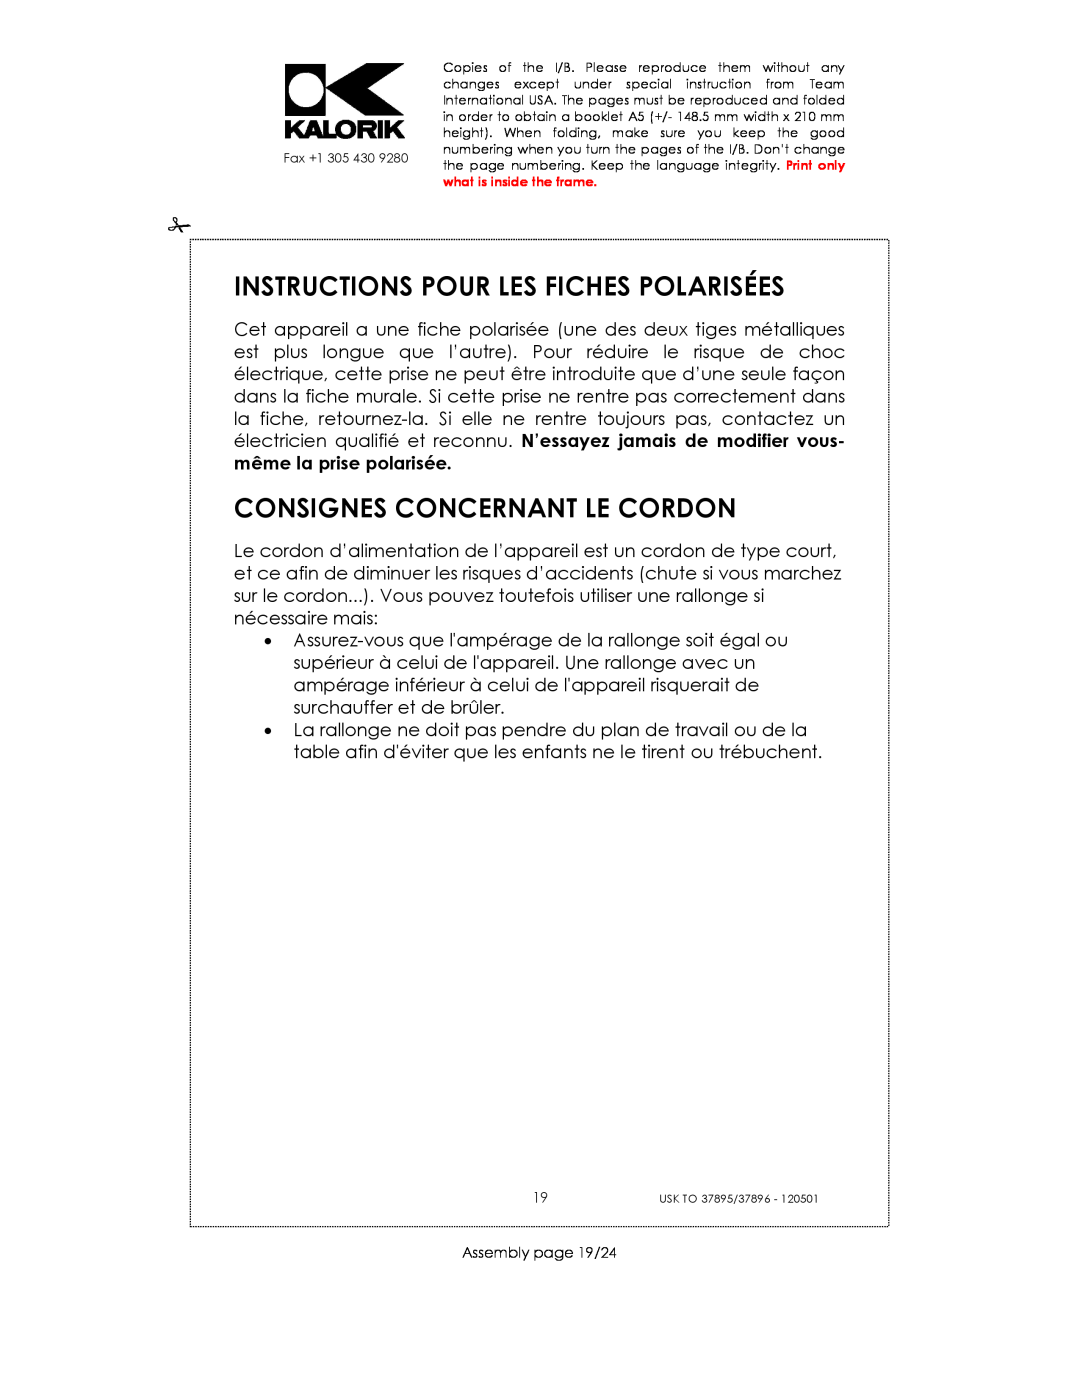 Kalorik USK TO 37895 manual Instructions Pour Les Fiches Polarisées, Consignes Concernant Le Cordon, Assembly page 19/24 